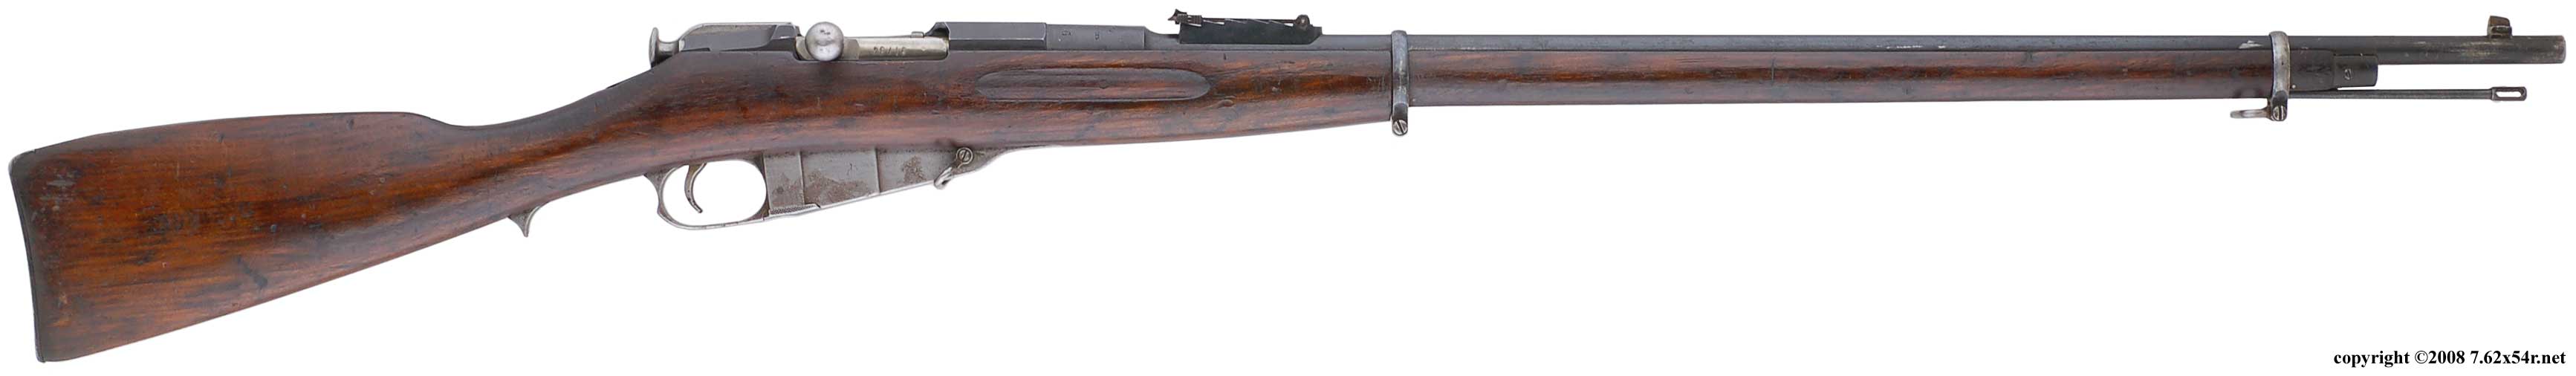 莫辛納乾1891步槍早期型